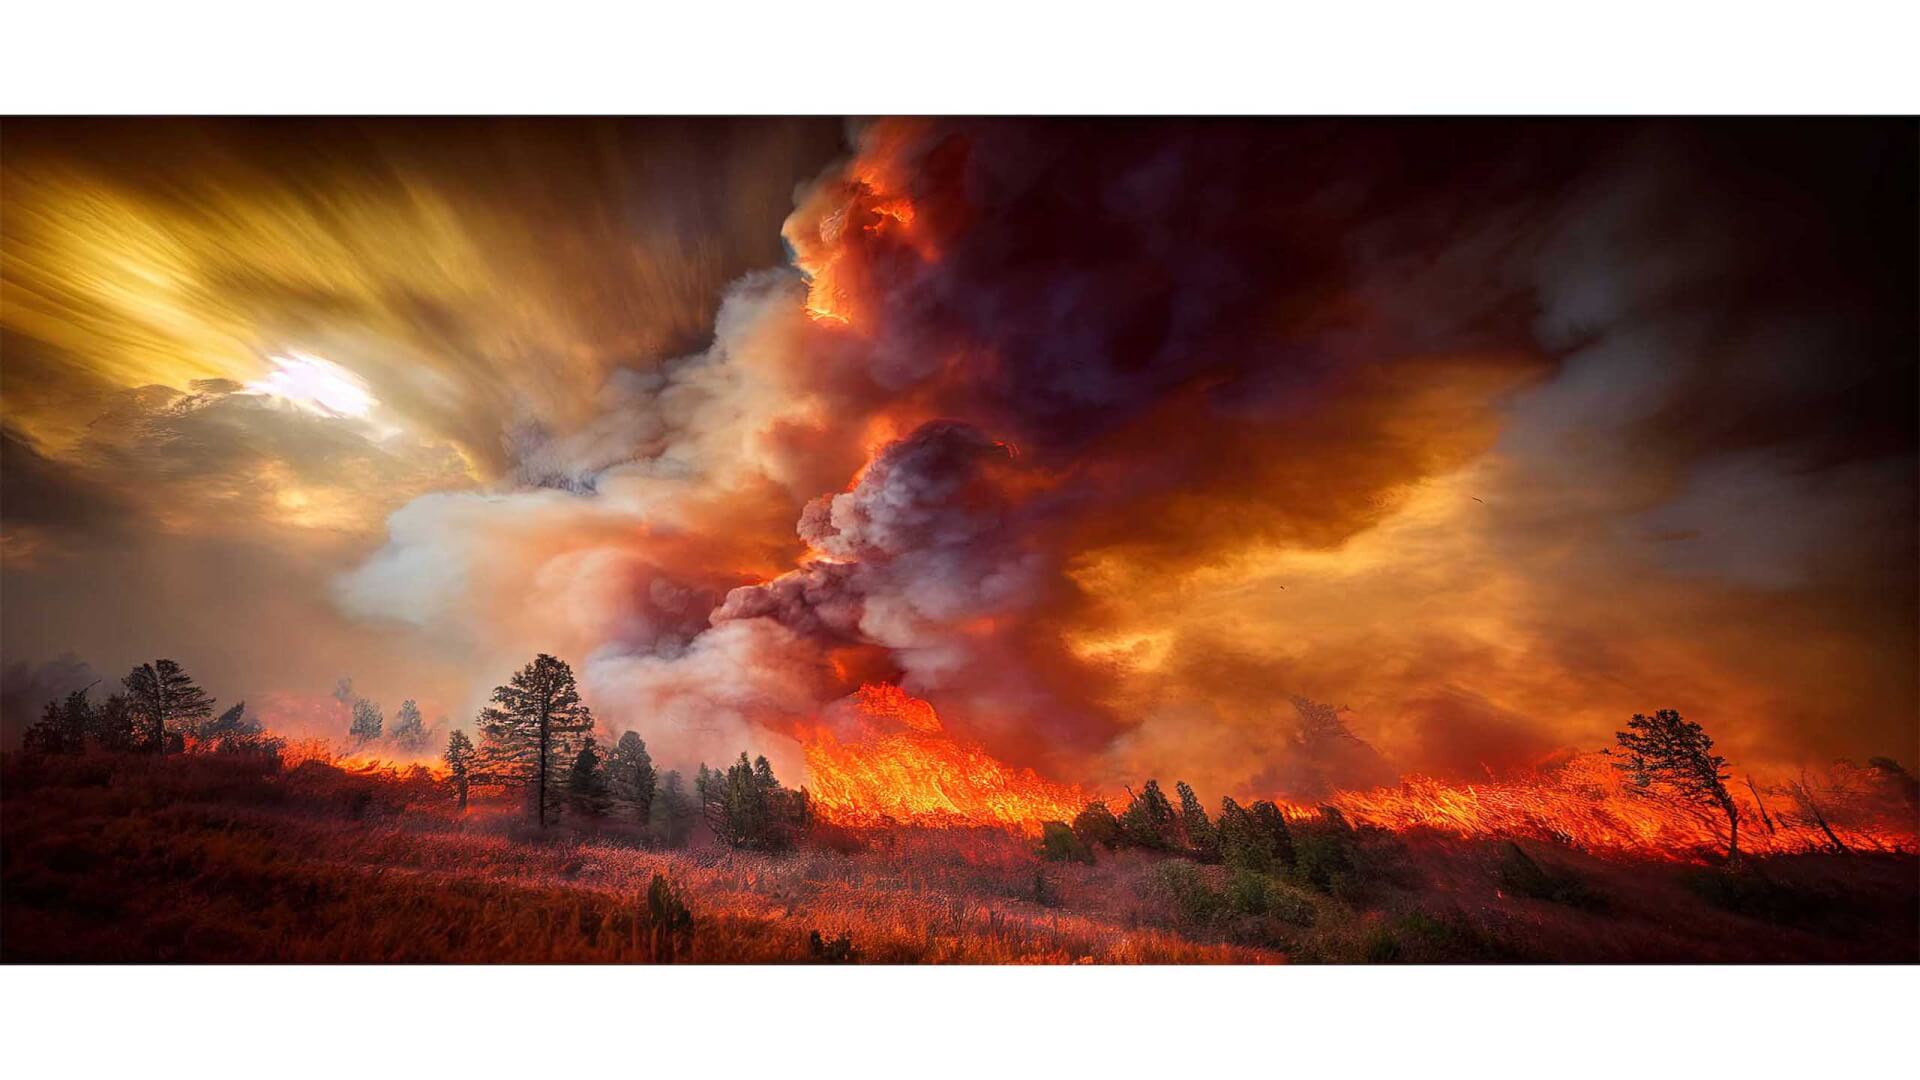 wildfire risk score of field on fire